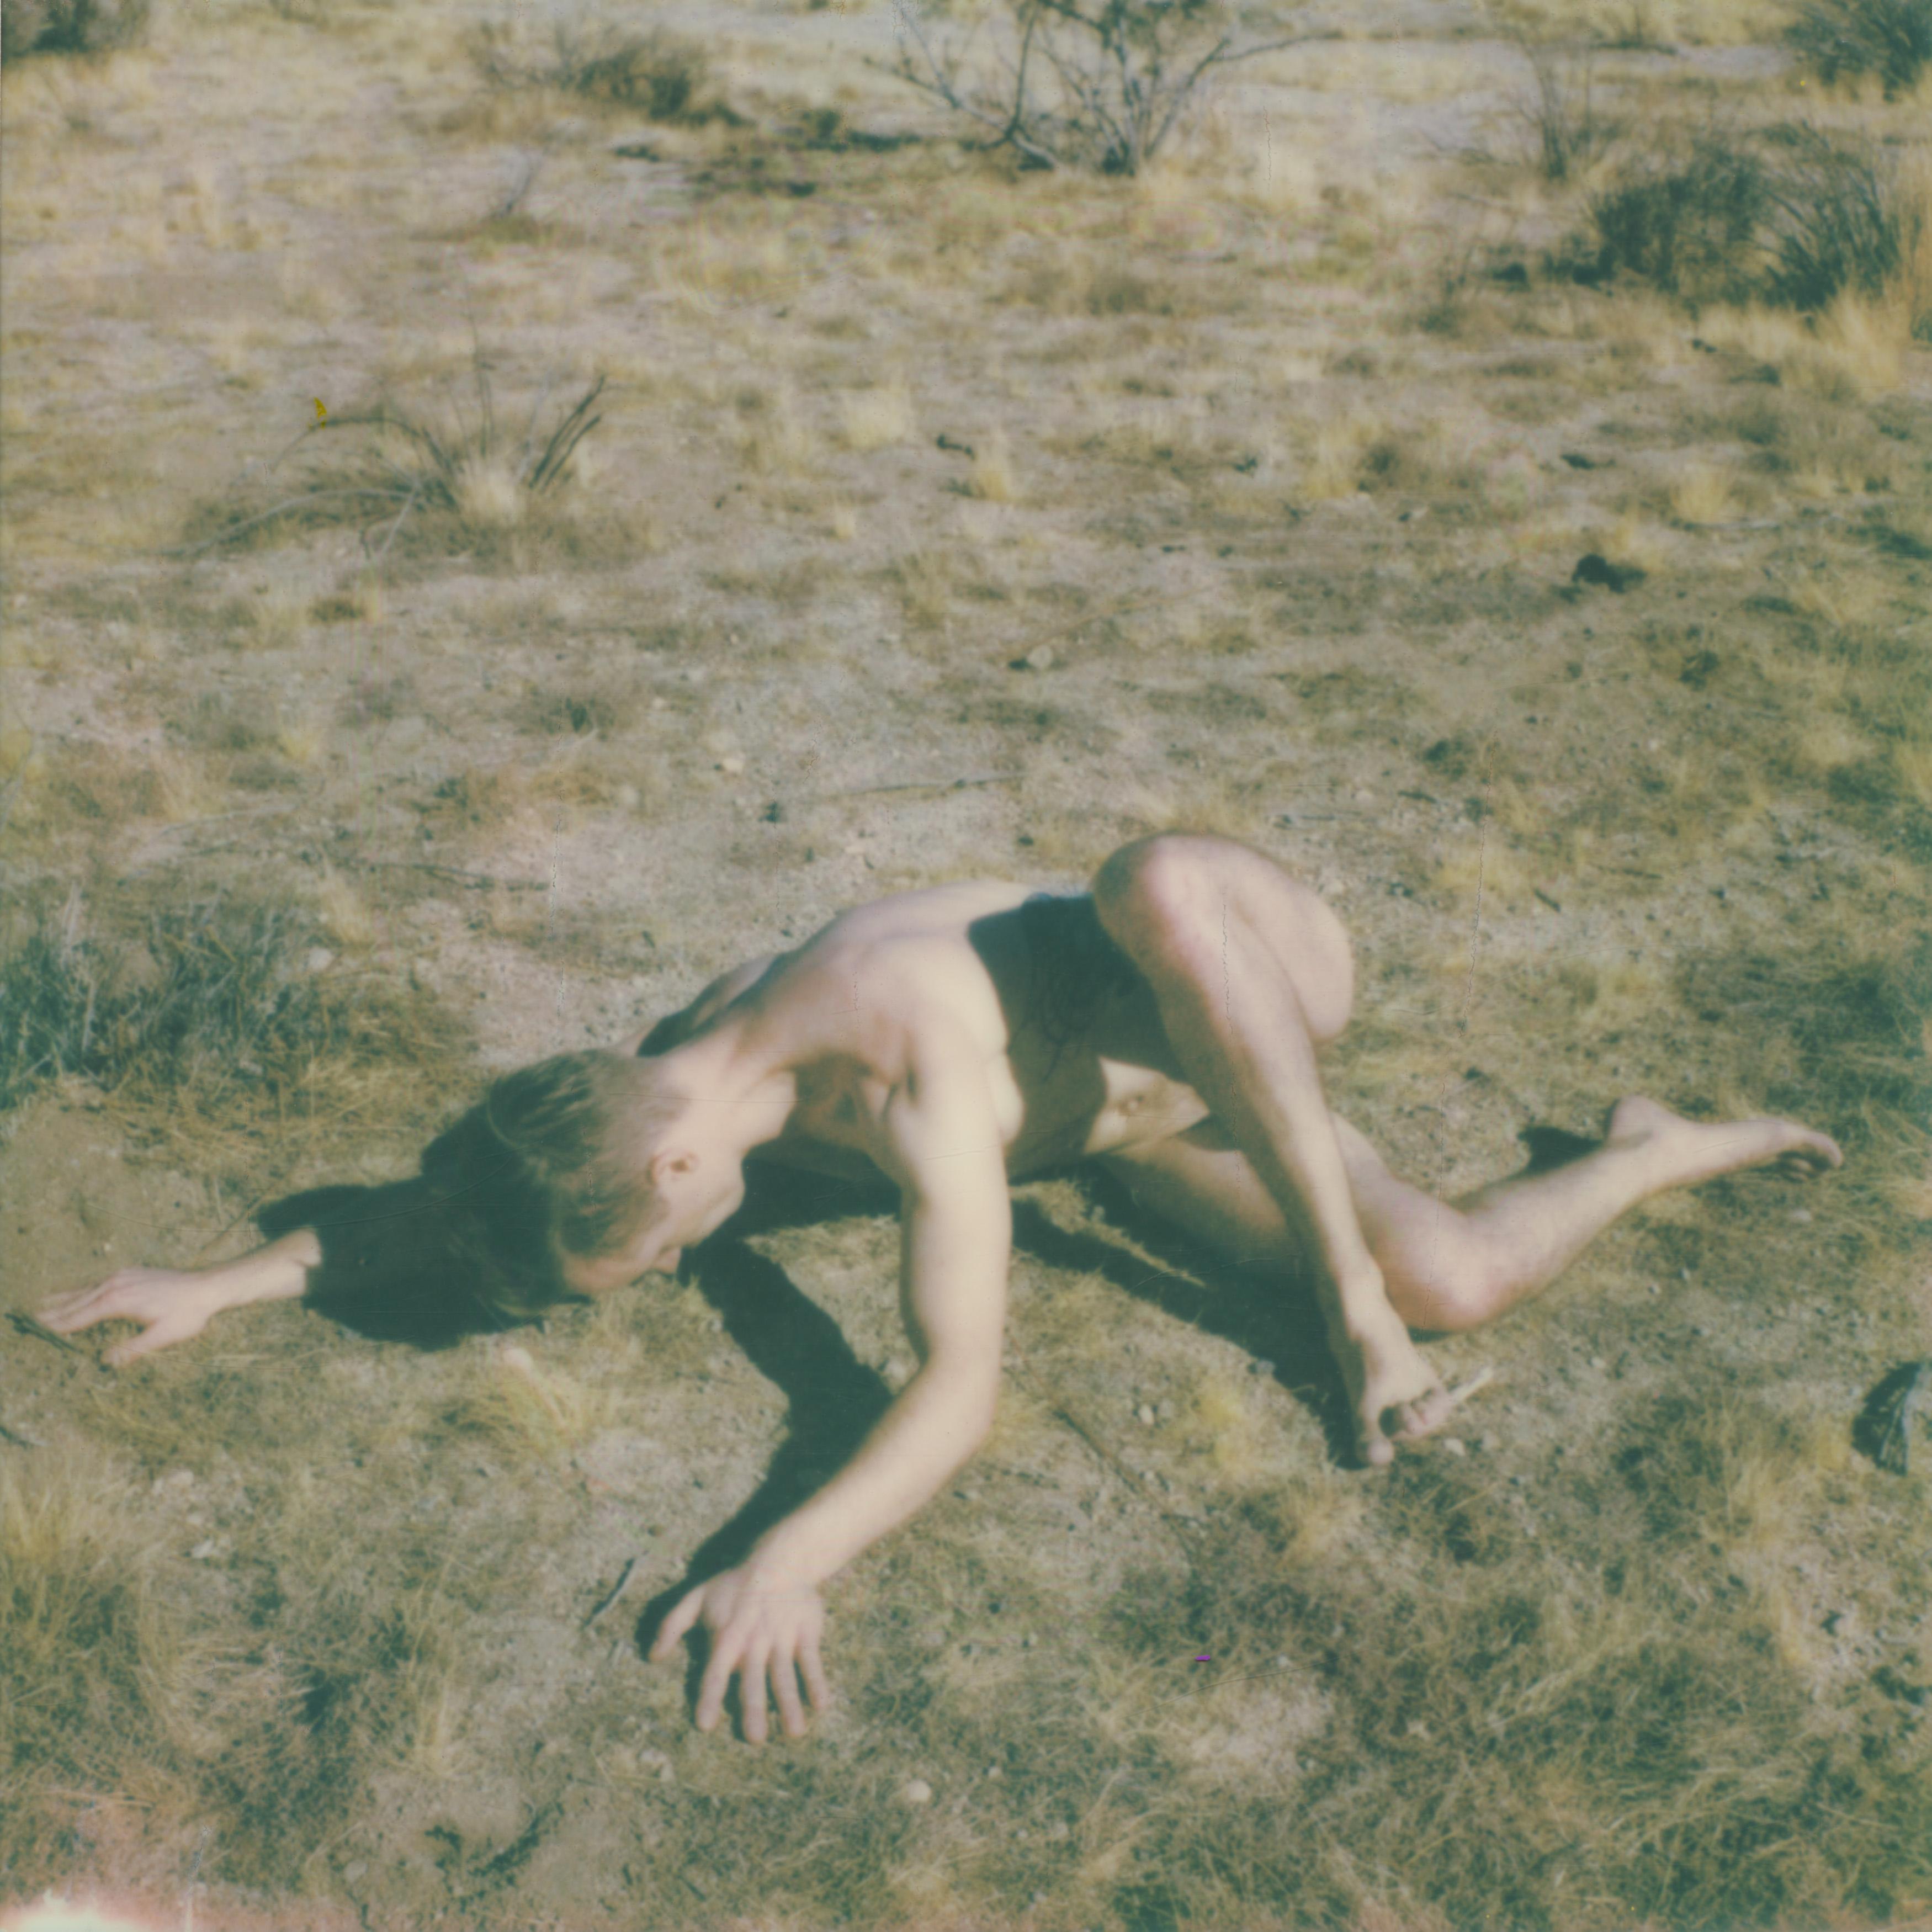 Kirsten Thys van den Audenaerde Nude Photograph - Groundwork - Contemporary, Polaroid, Nude, 21st Century, Joshua Tree